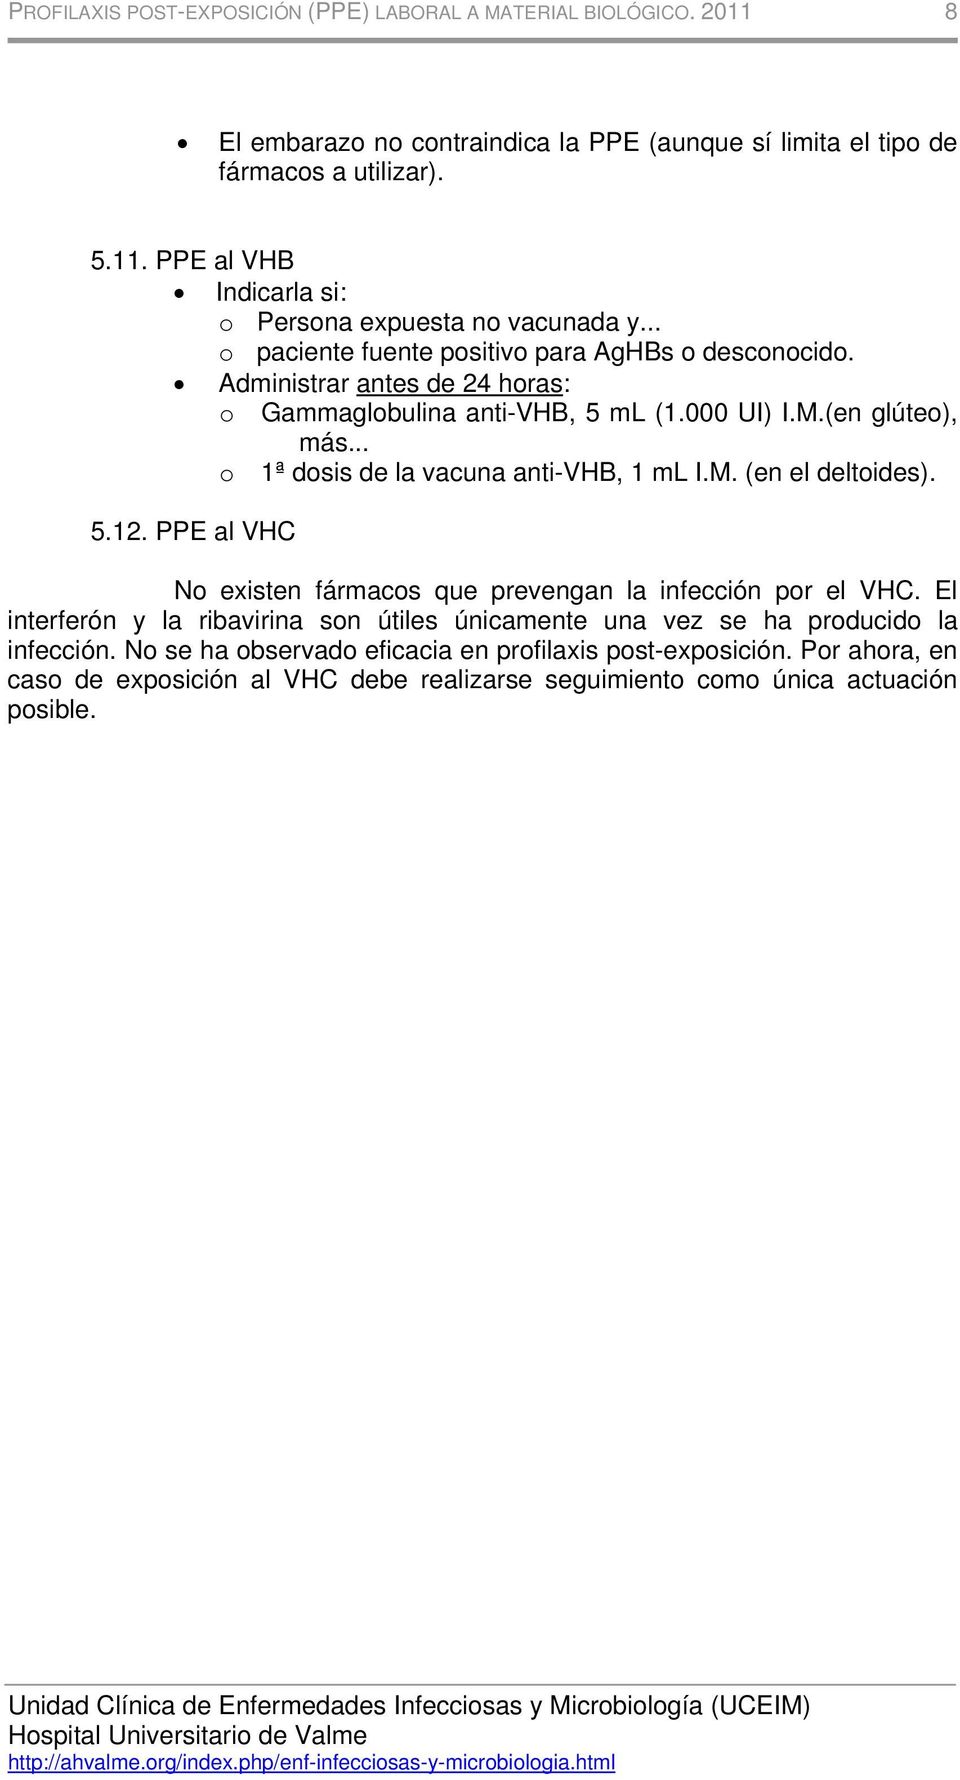 .. o 1ª dosis de la vacuna anti-vhb, 1 ml I.M. (en el deltoides). 5.12. PPE al VHC No existen fármacos que prevengan la infección por el VHC.